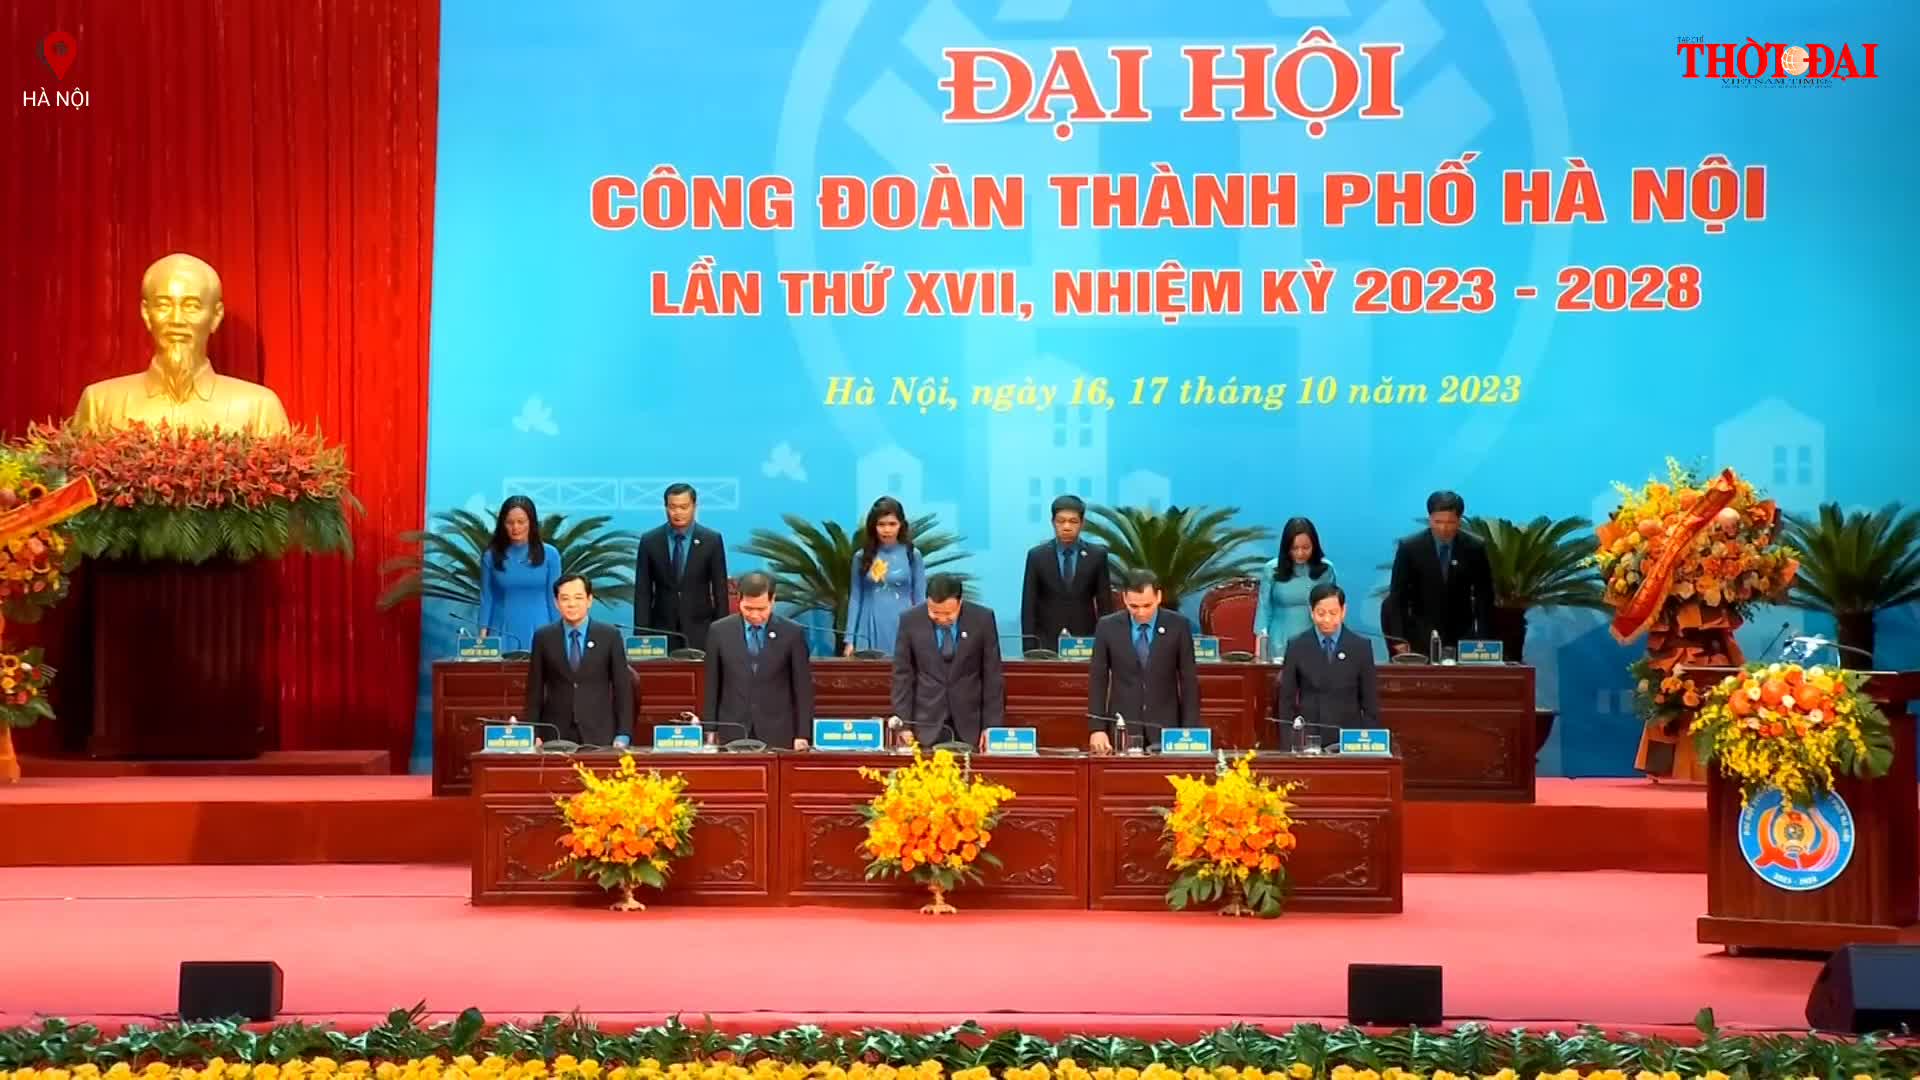 Đại hội Công đoàn Thành phố Hà Nội lần thứ XVII, nhiệm kỳ 2023 - 2028